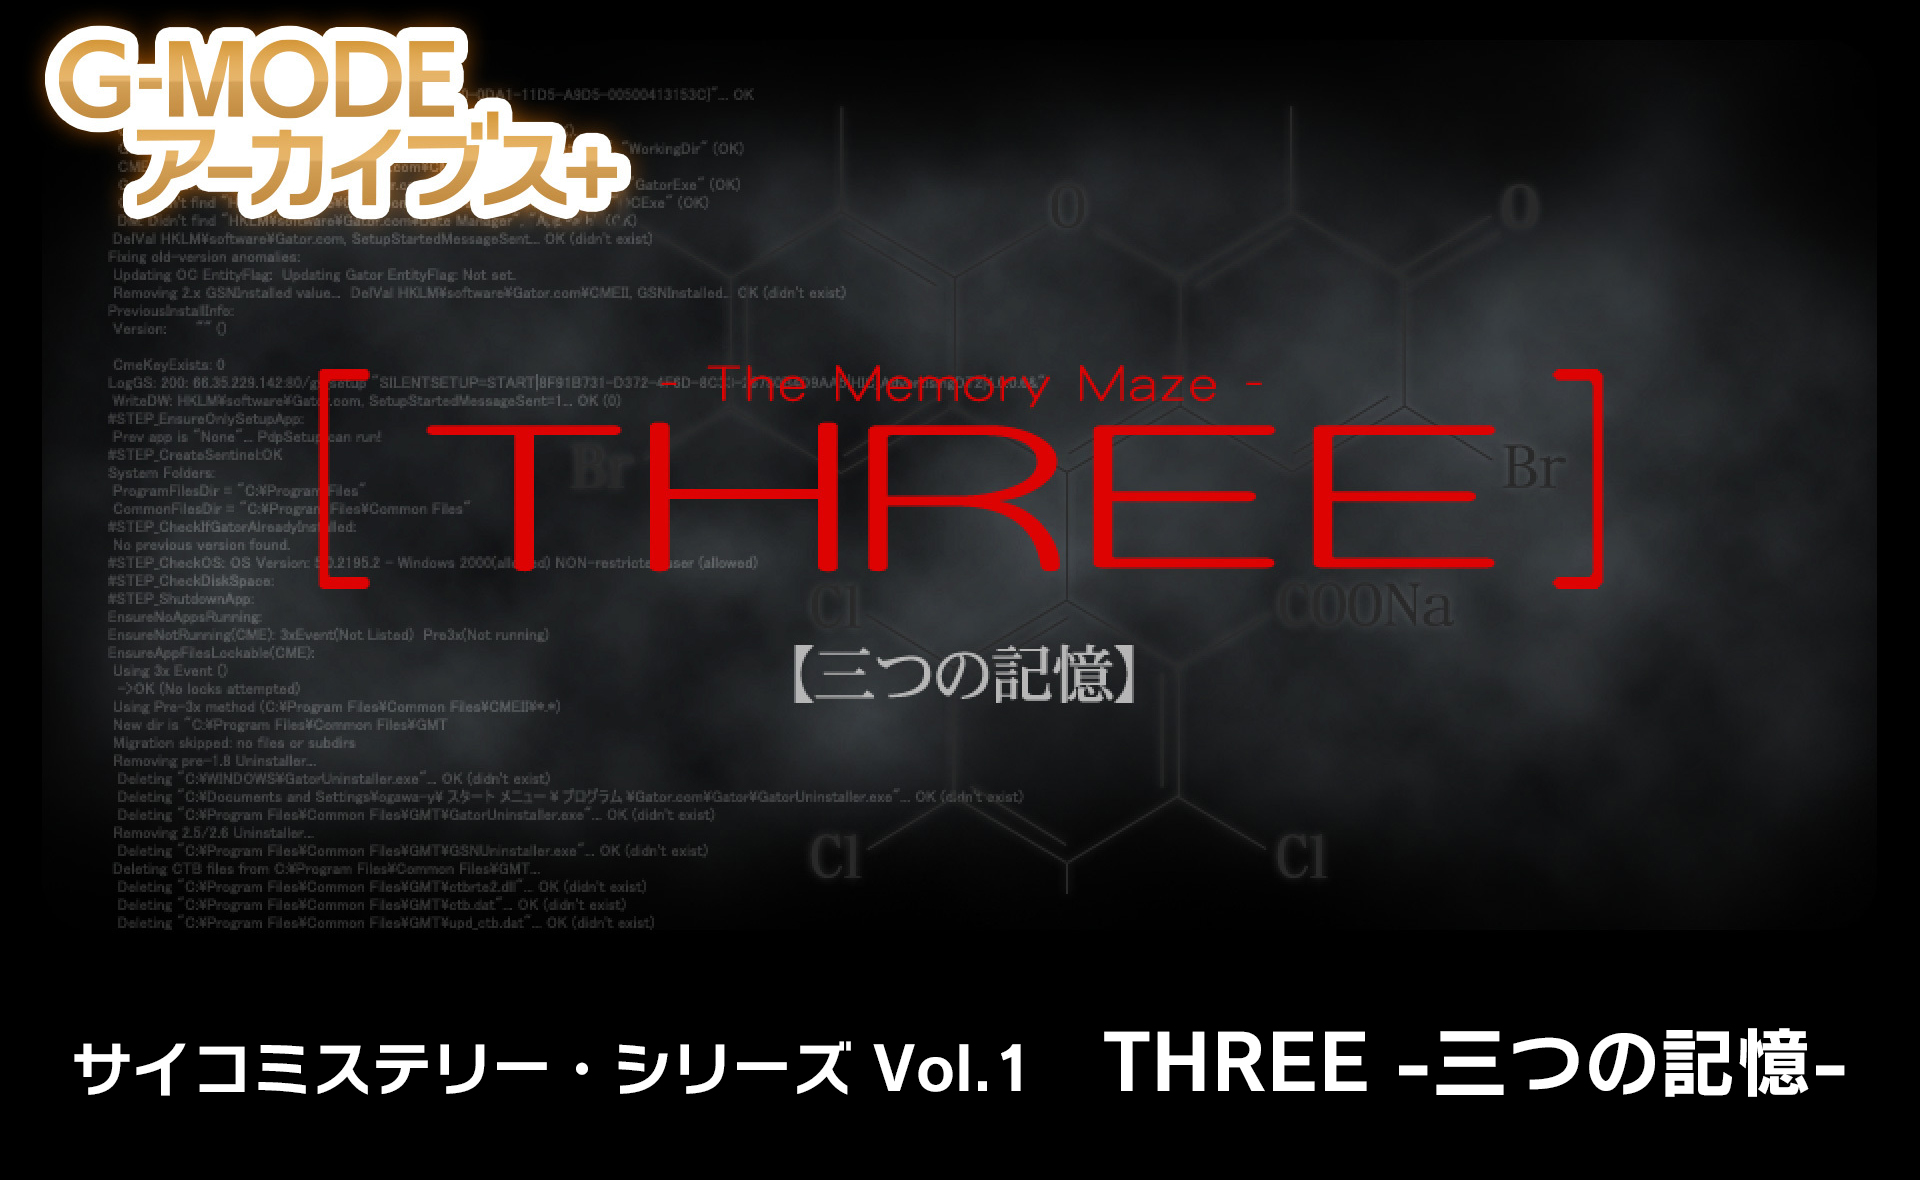 THREE -三つの記憶-